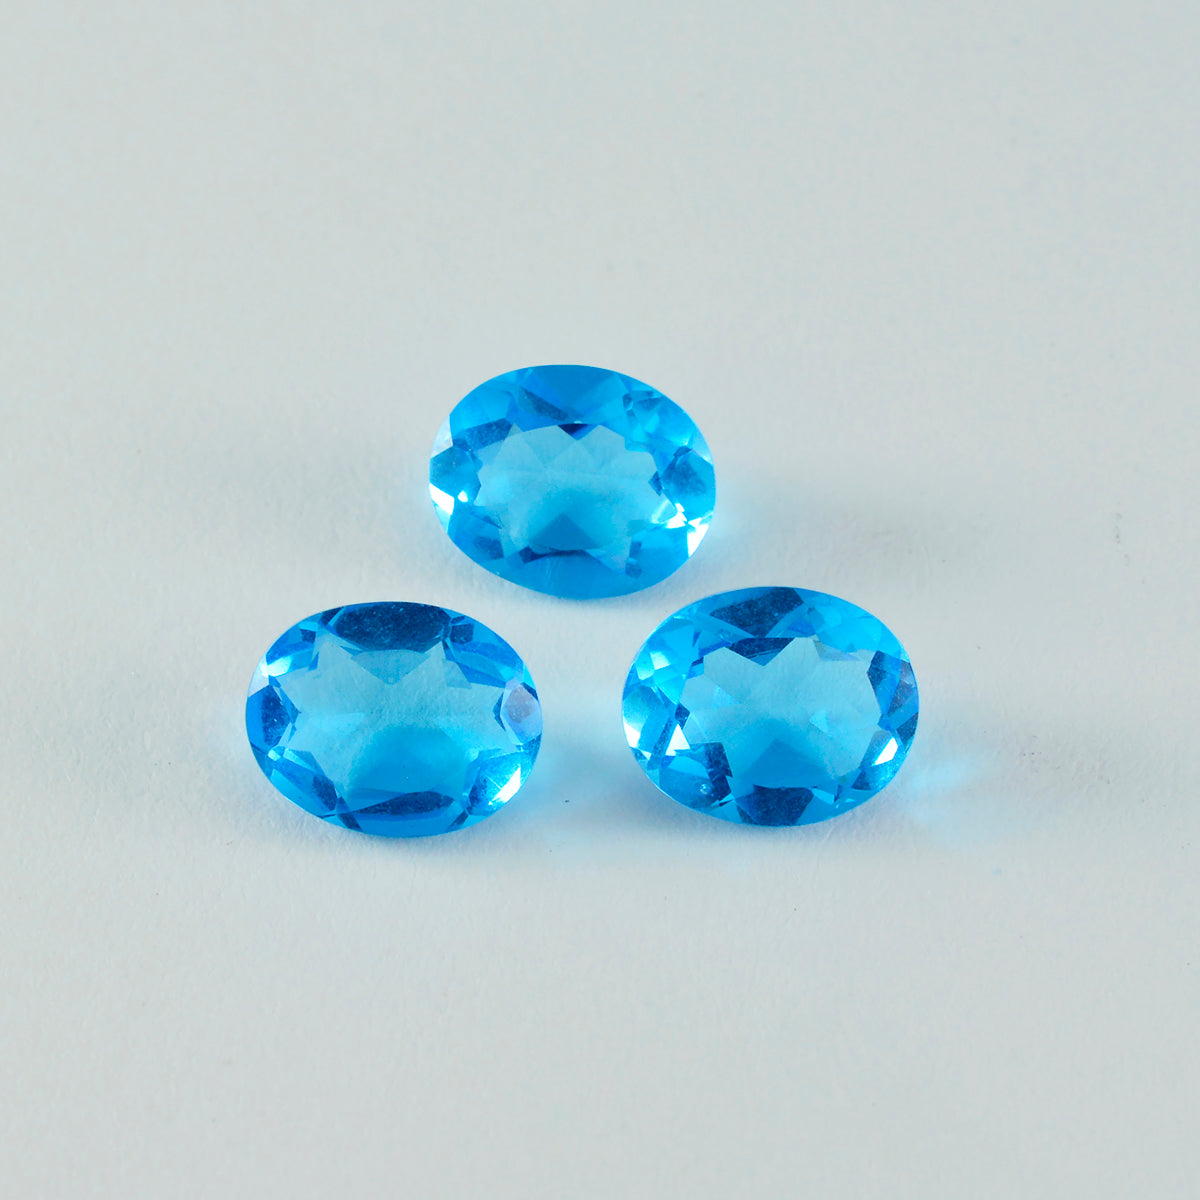 Riyogems 1 Stück blauer Topas, CZ, facettiert, 10 x 14 mm, ovale Form, gut aussehender, hochwertiger loser Edelstein